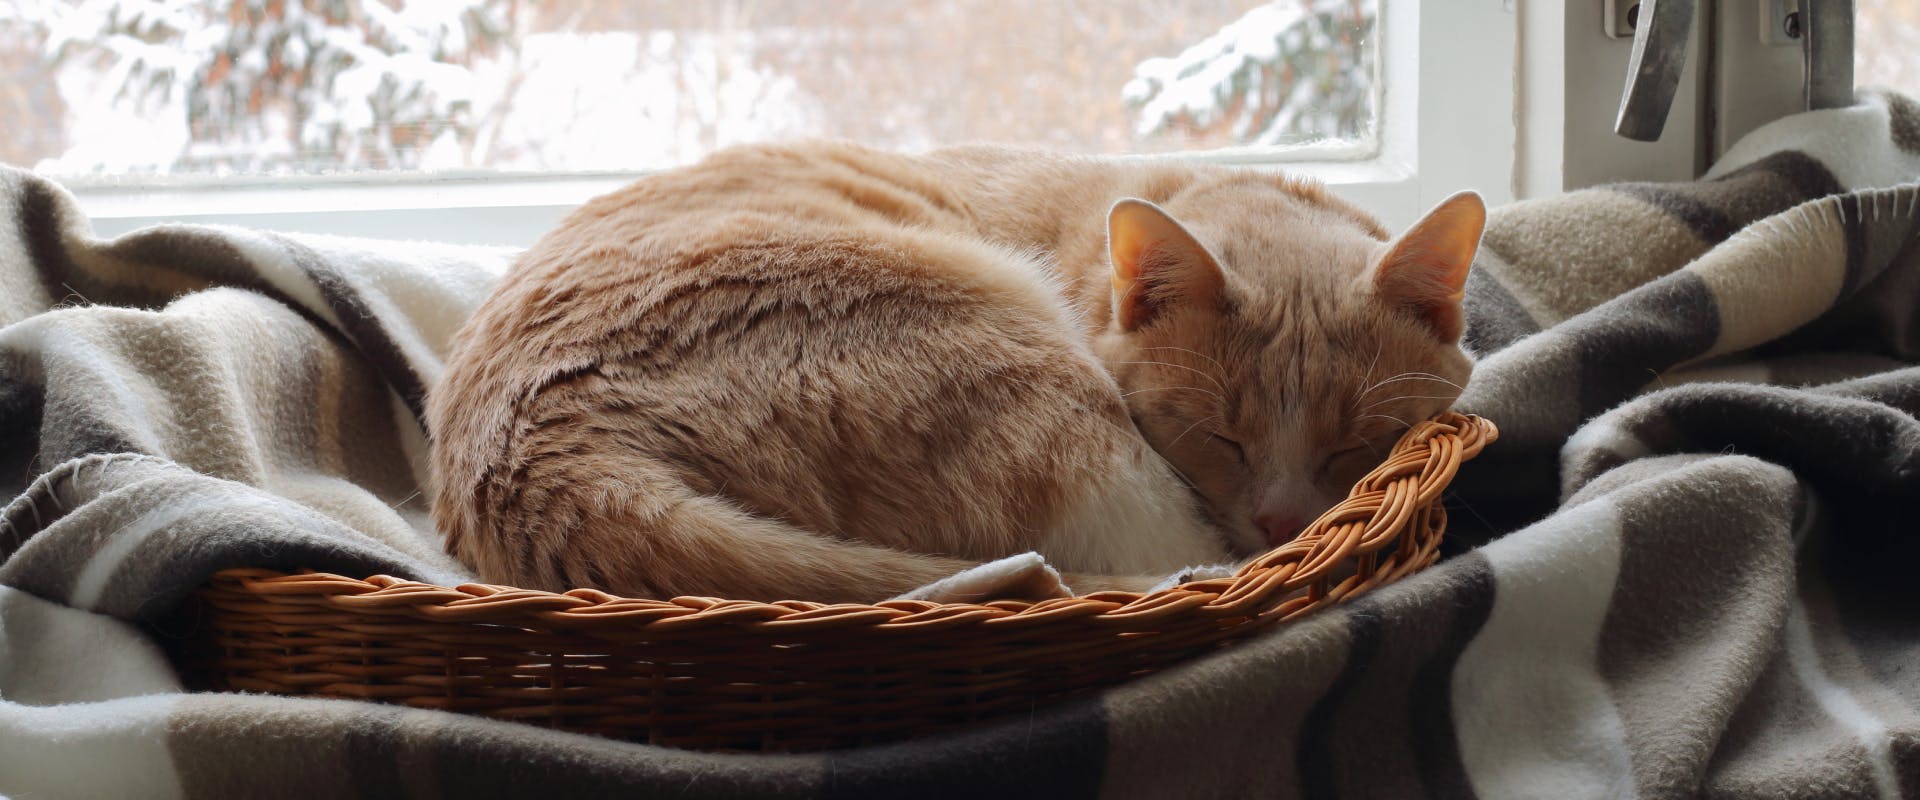 A cat curls up in a basket.